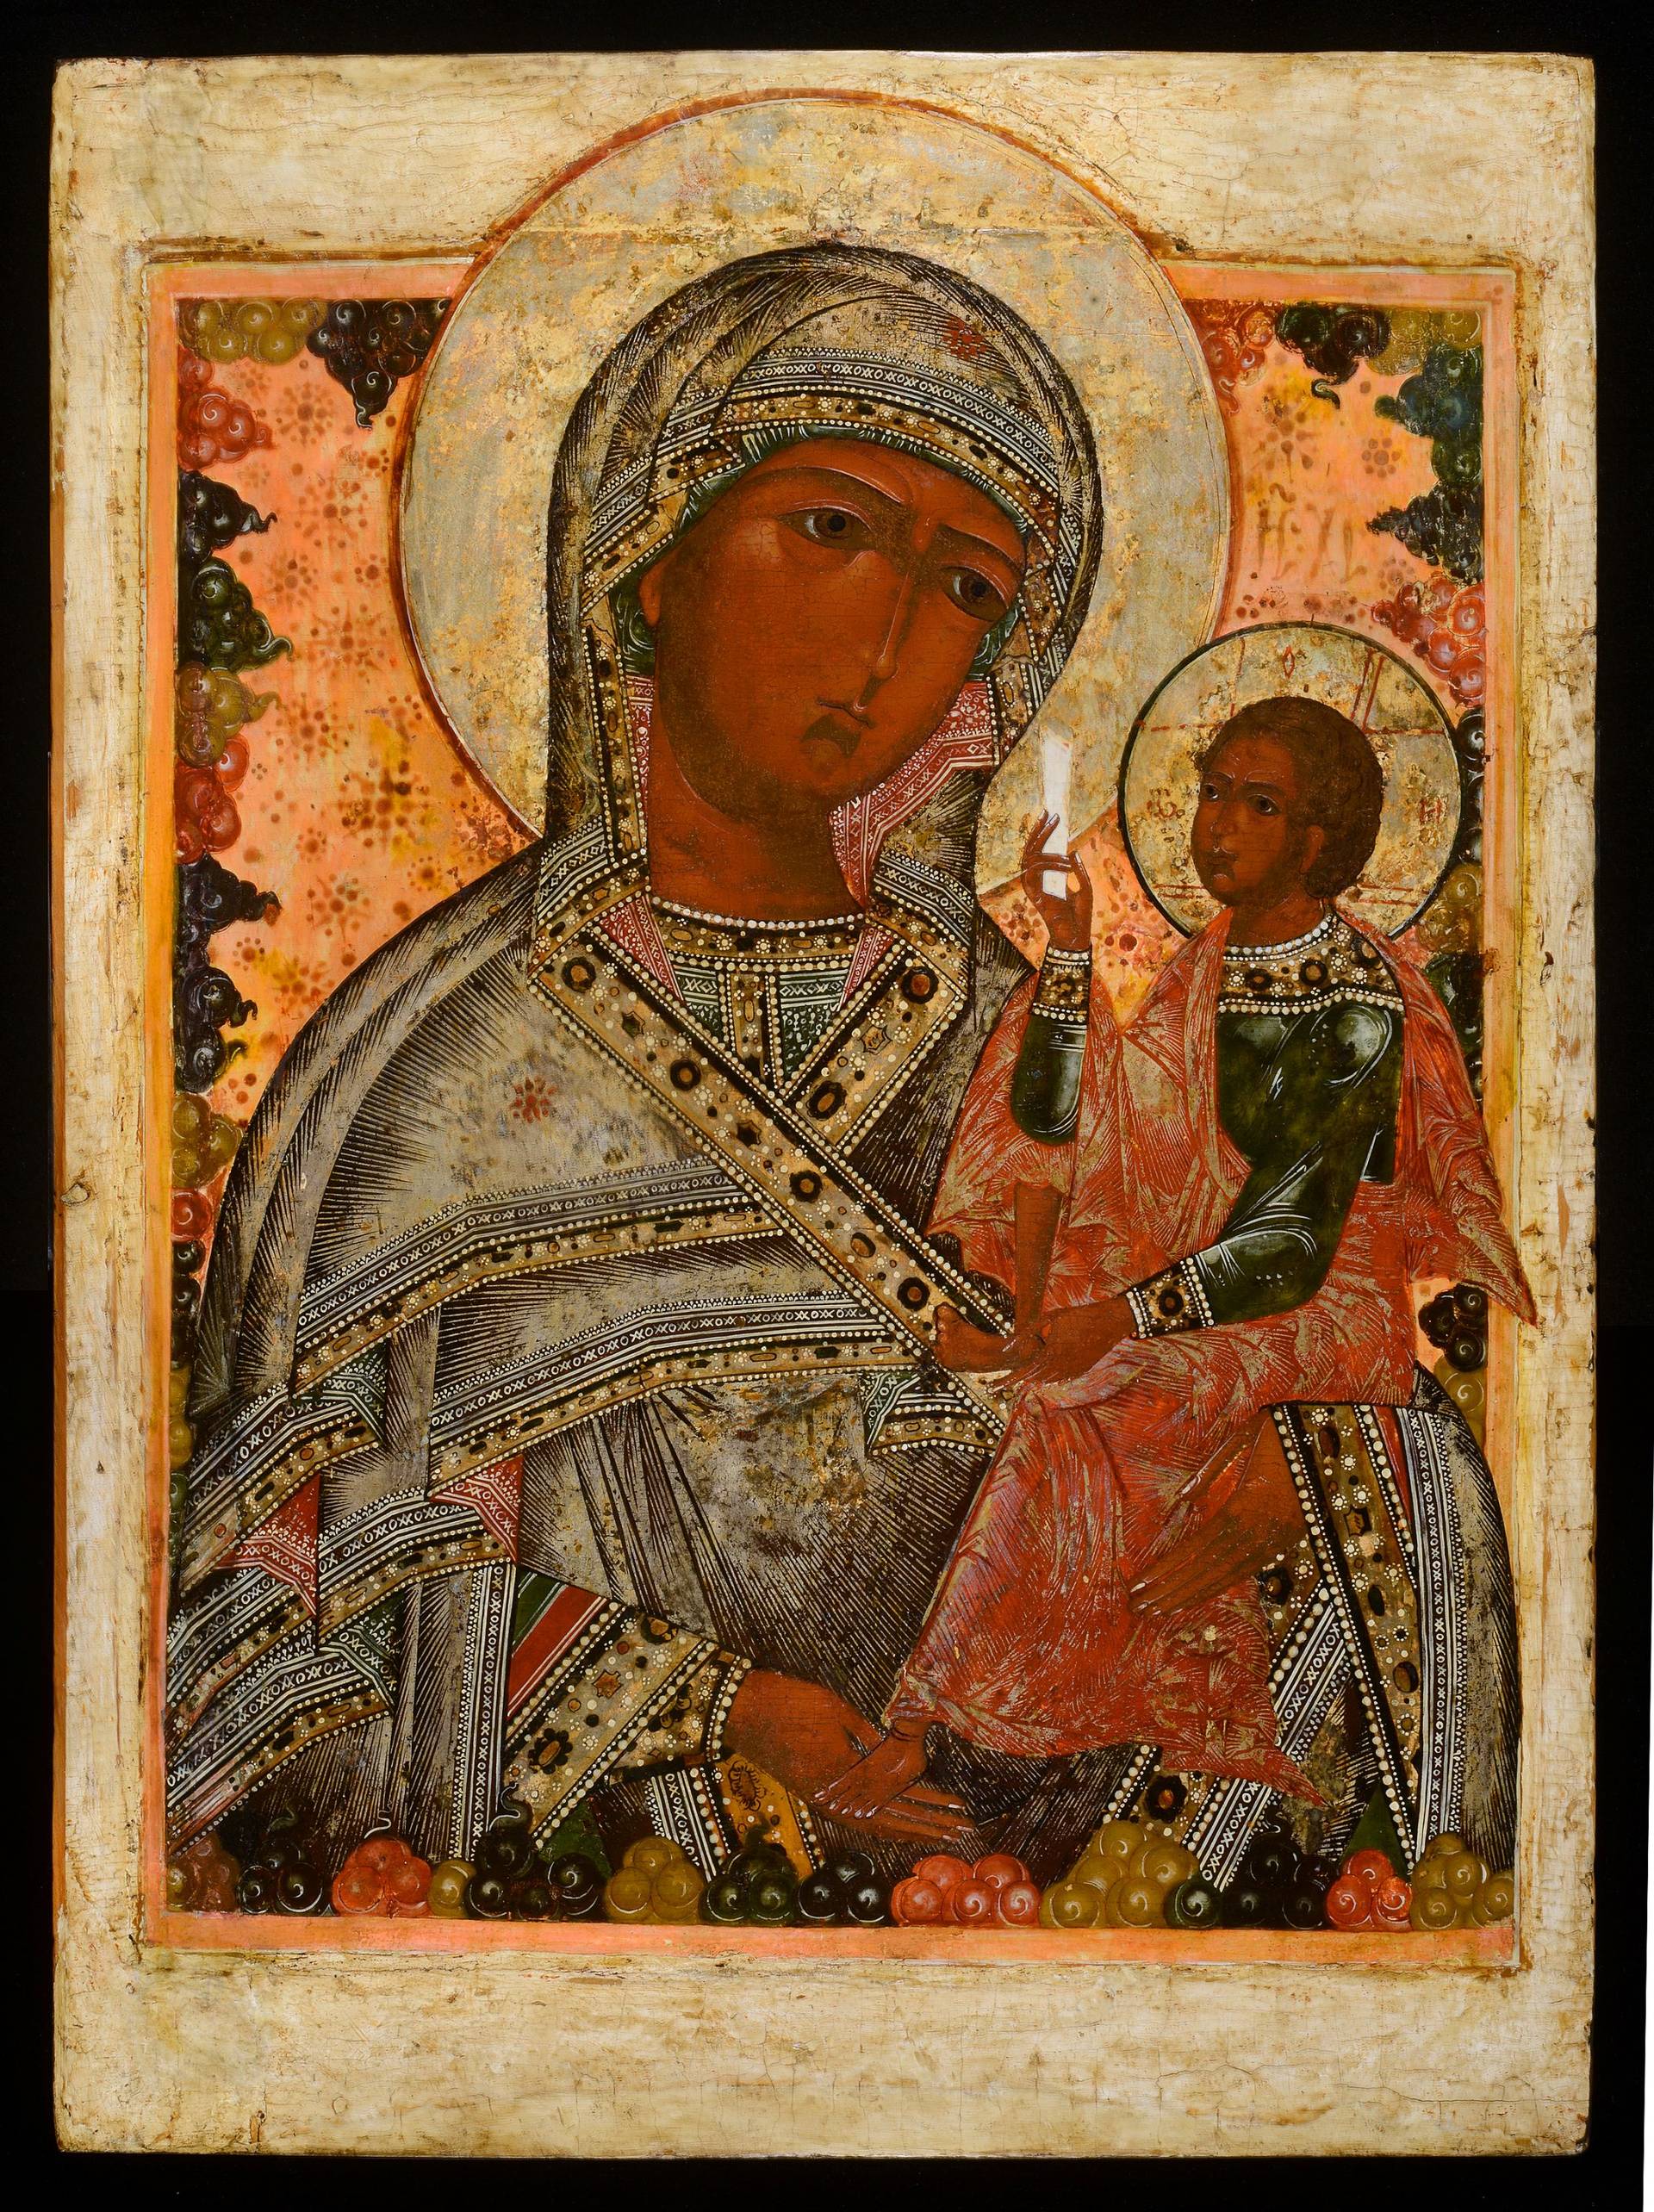 Шуйская икона Пресвятой Богородицы. Русский Север. Около 1700 года. 71 x 53 см